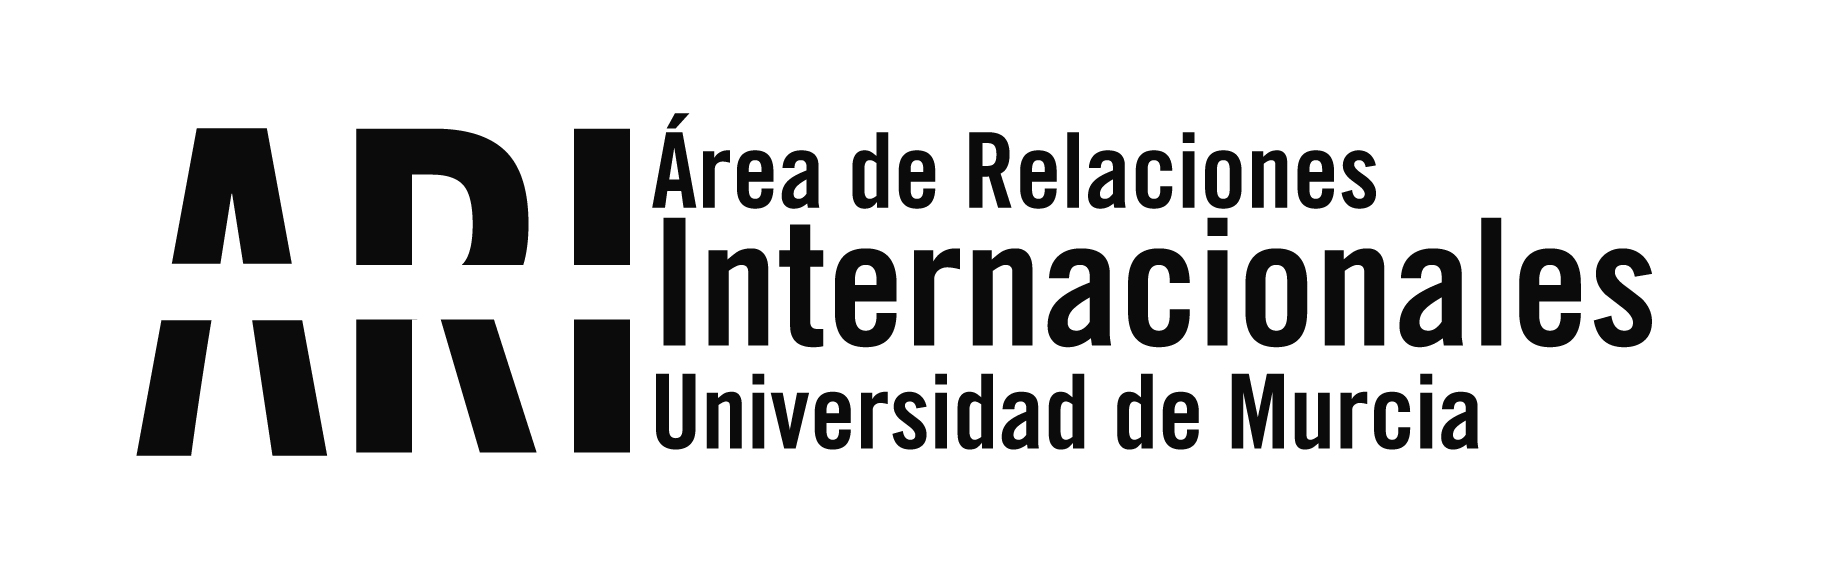 La UM acoge el III Encuentro Hispano Argelino - Área de Relaciones Internacionales